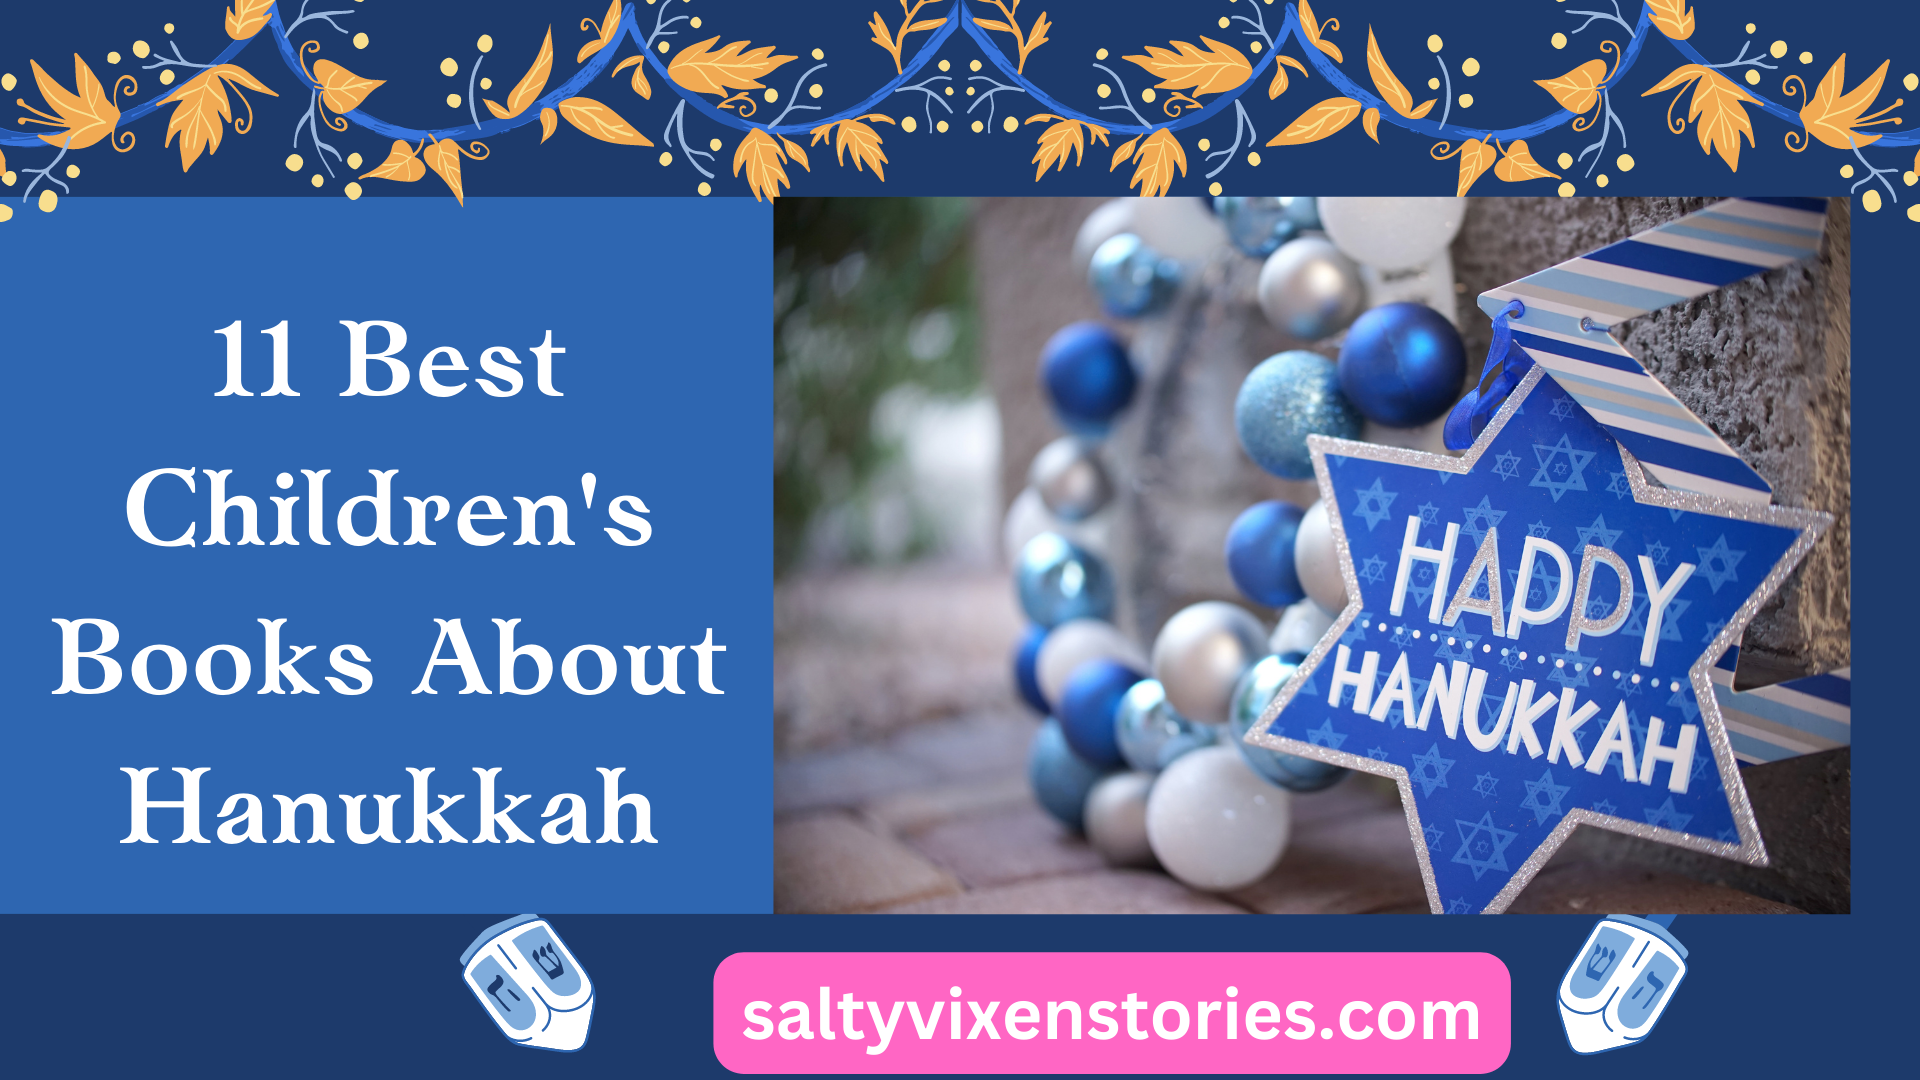 11 Best Children’s Books About Hanukkah